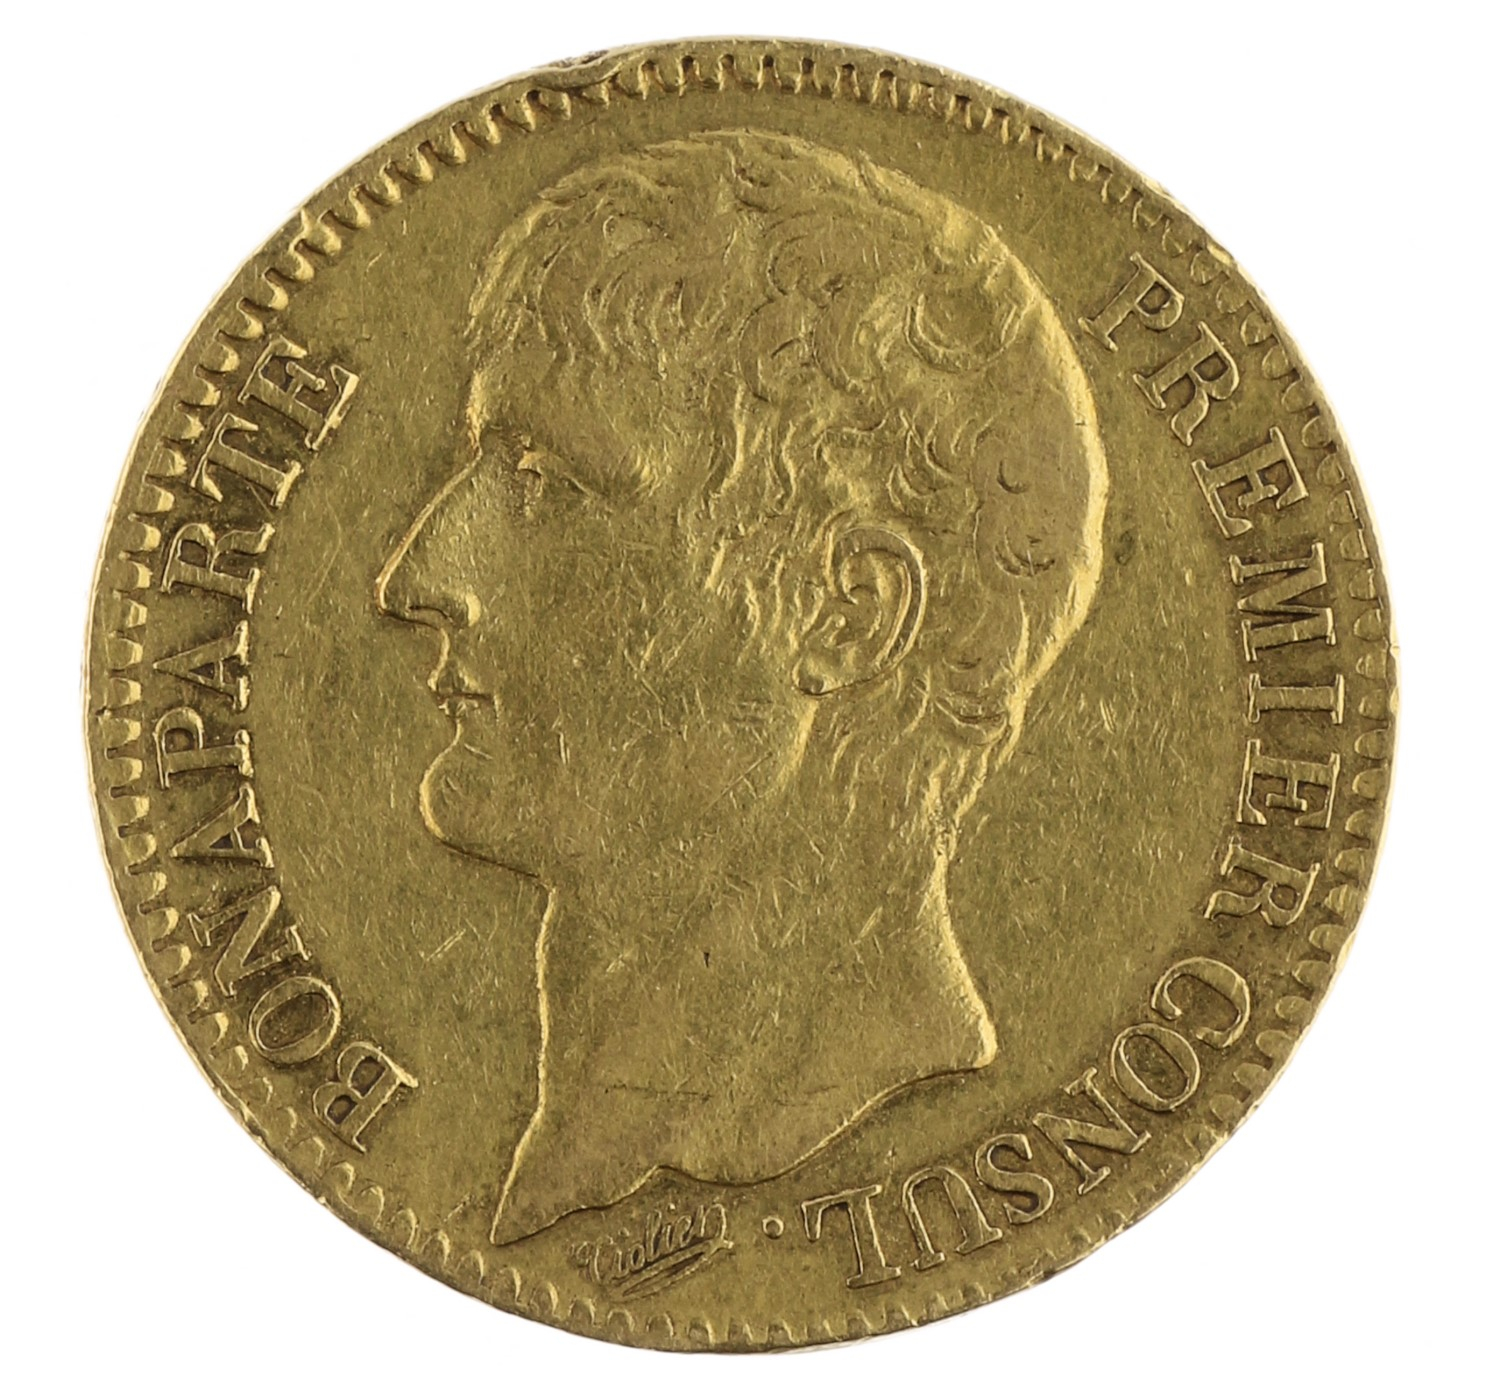 40 Francs - France - ANXI (1803)  A